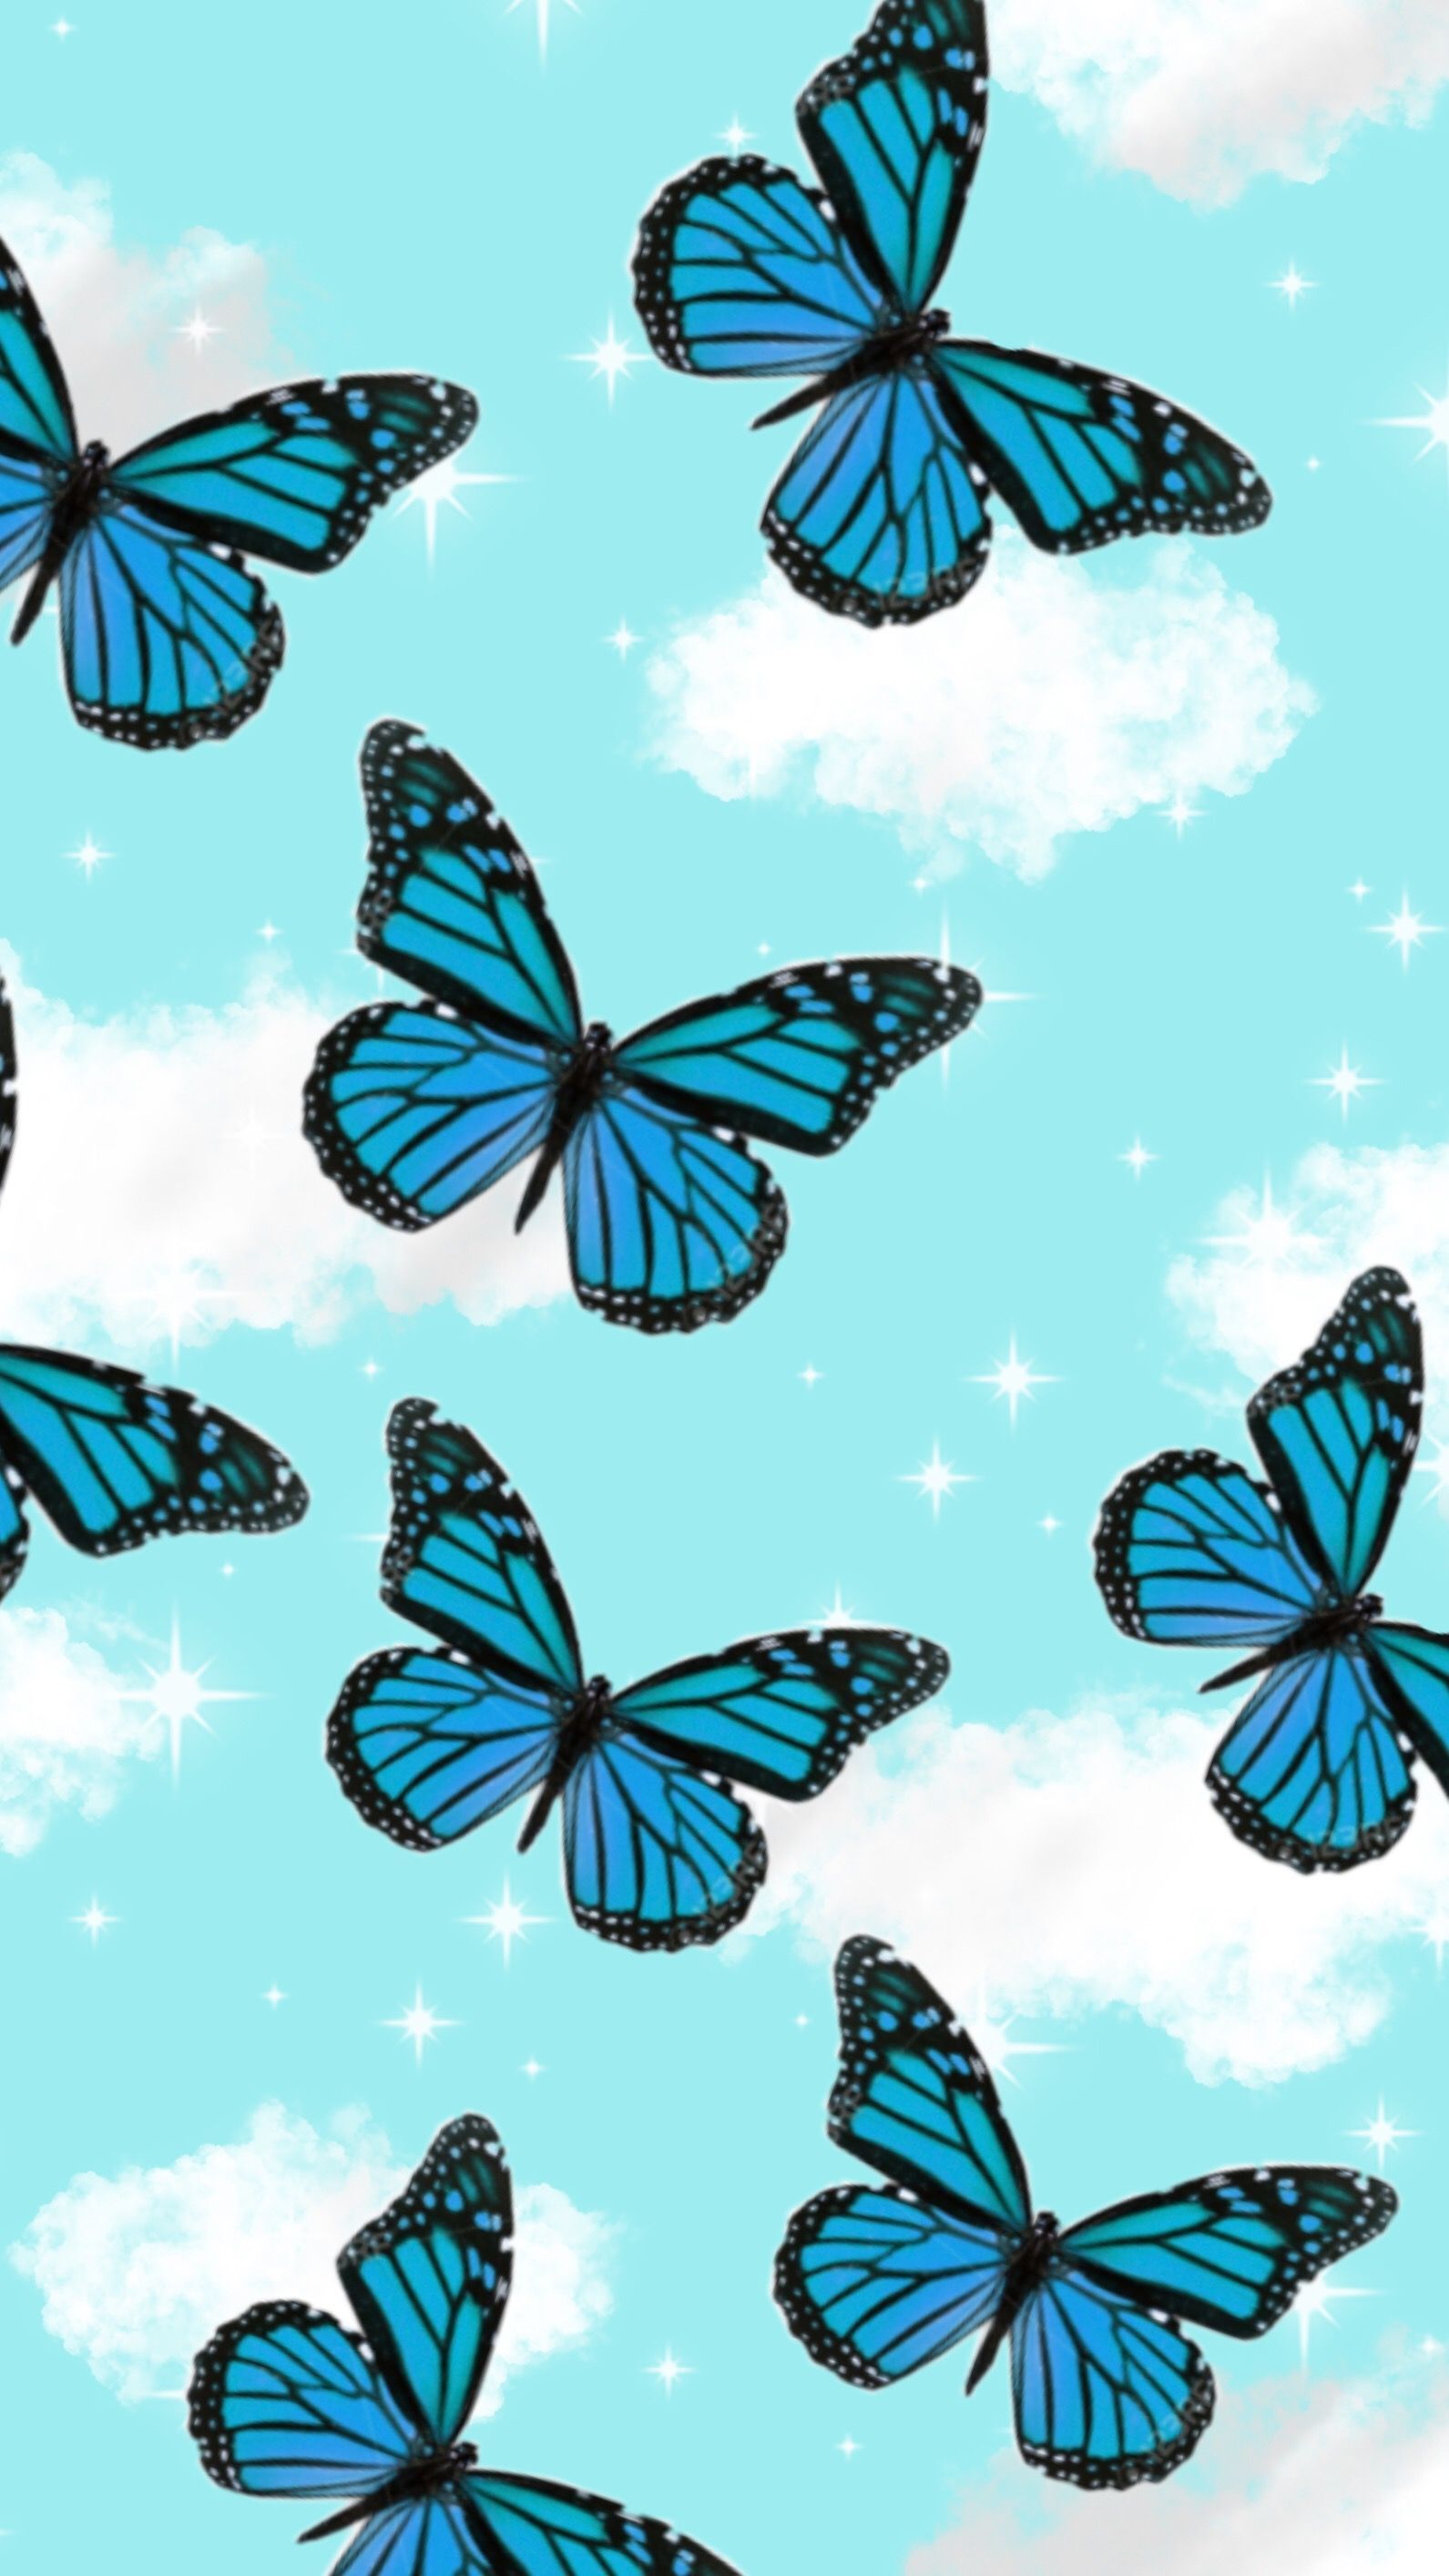 Blue Butterflies. Butterfly wallpaper iphone, Cute patterns wallpaper, Aesthetic iphone wallpaper